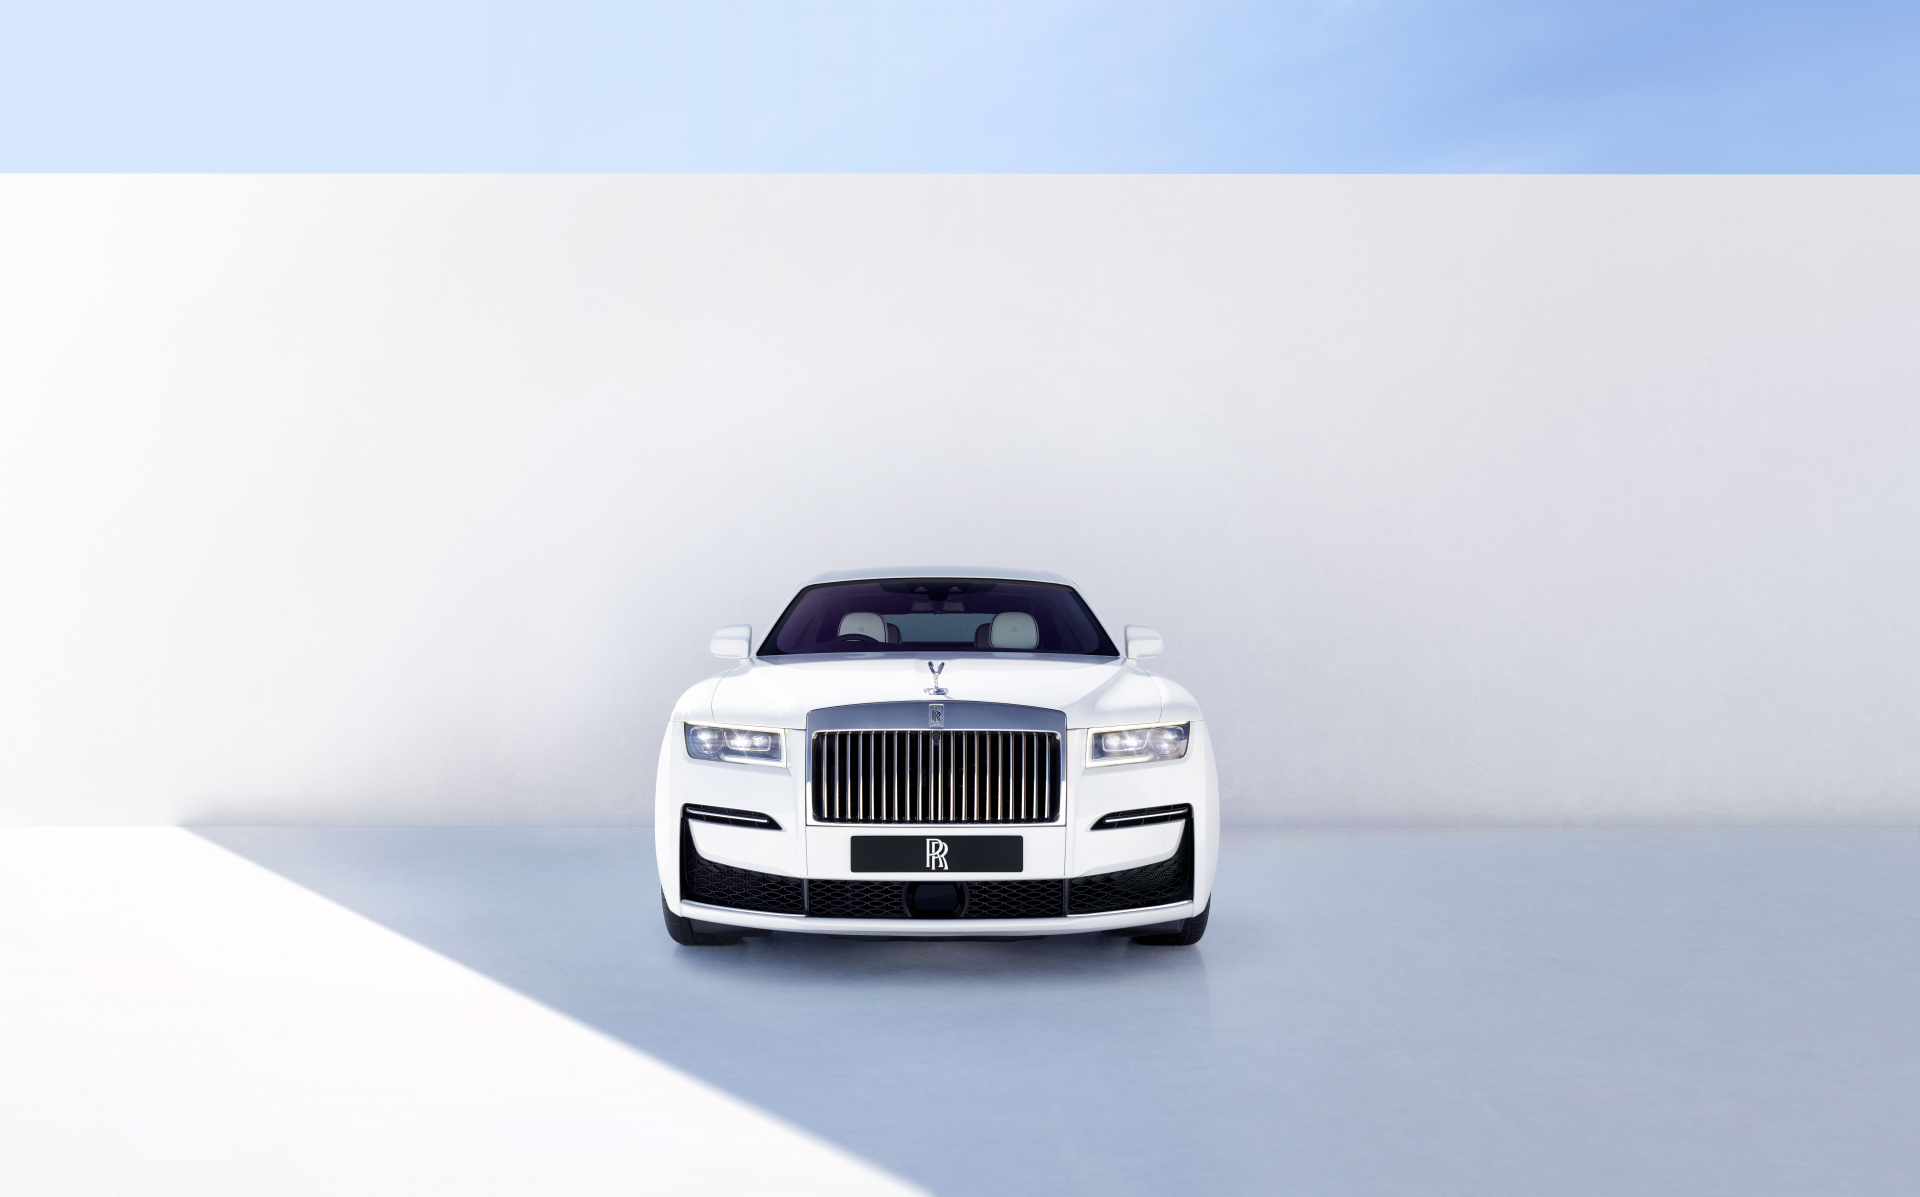 Yeni Nesil Ghost ile Rolls Royce Ne Hedefledi?